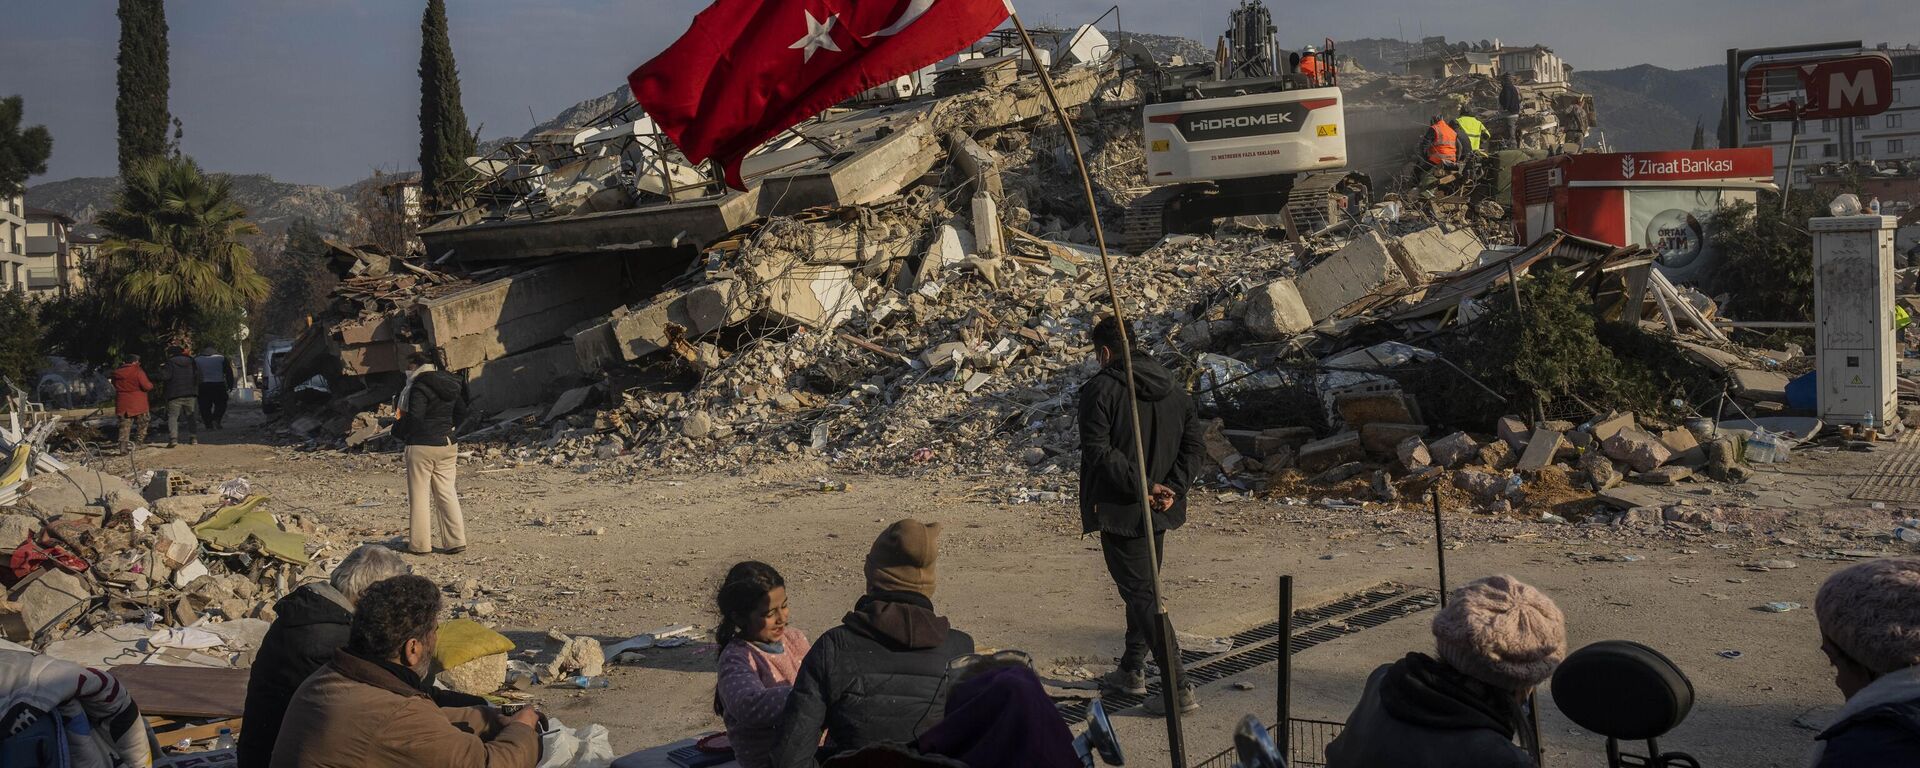 Família sentada junto de prédio colapsado após terremoto, em Antália, Turquia, 11 de fevereiro de 2023 - Sputnik Brasil, 1920, 11.02.2023